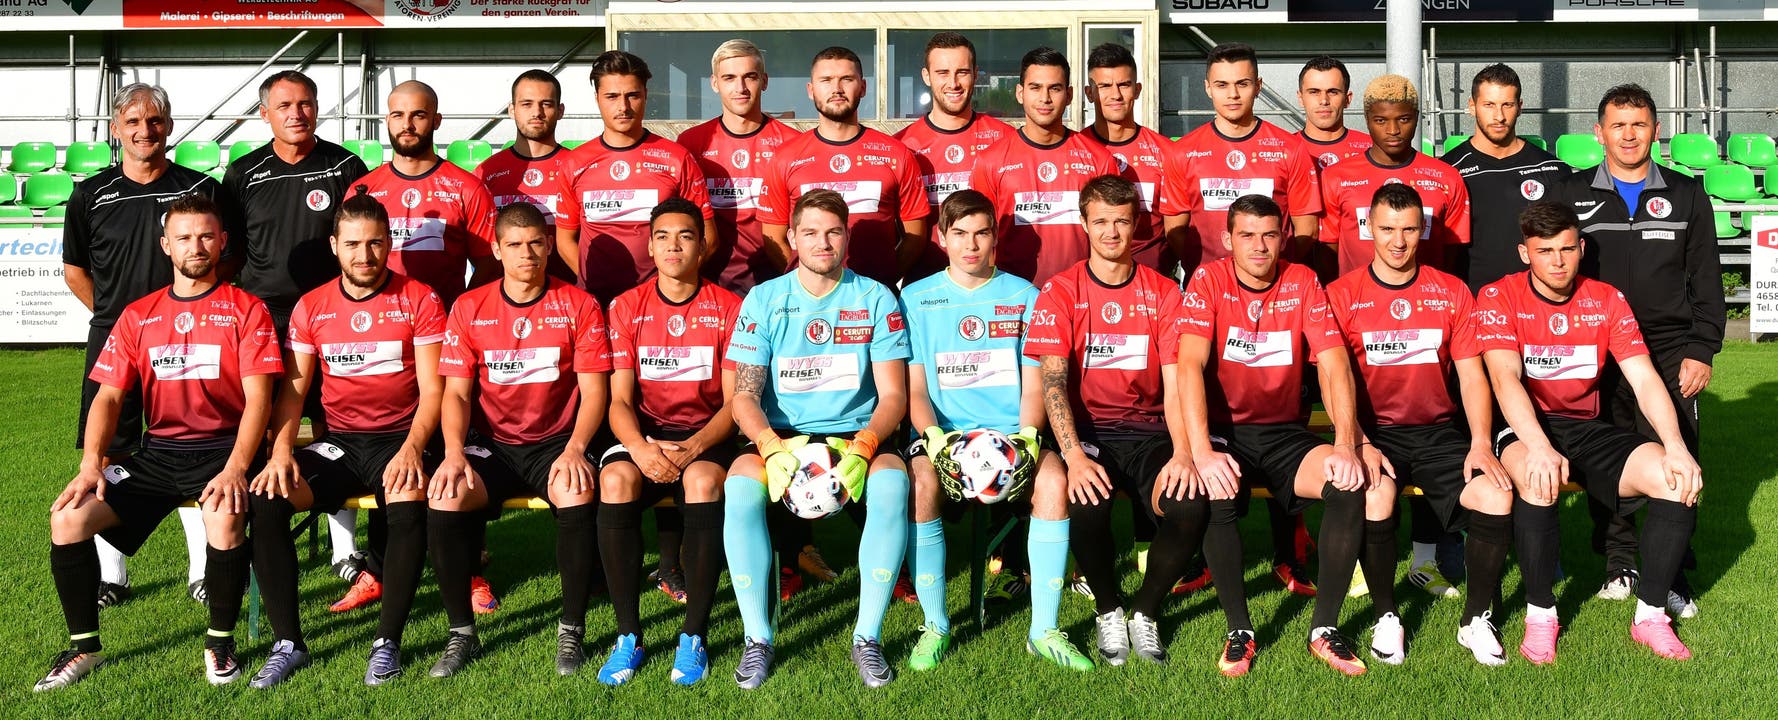 Die Mannschaft des FC Wangen in der Saison 2016/17